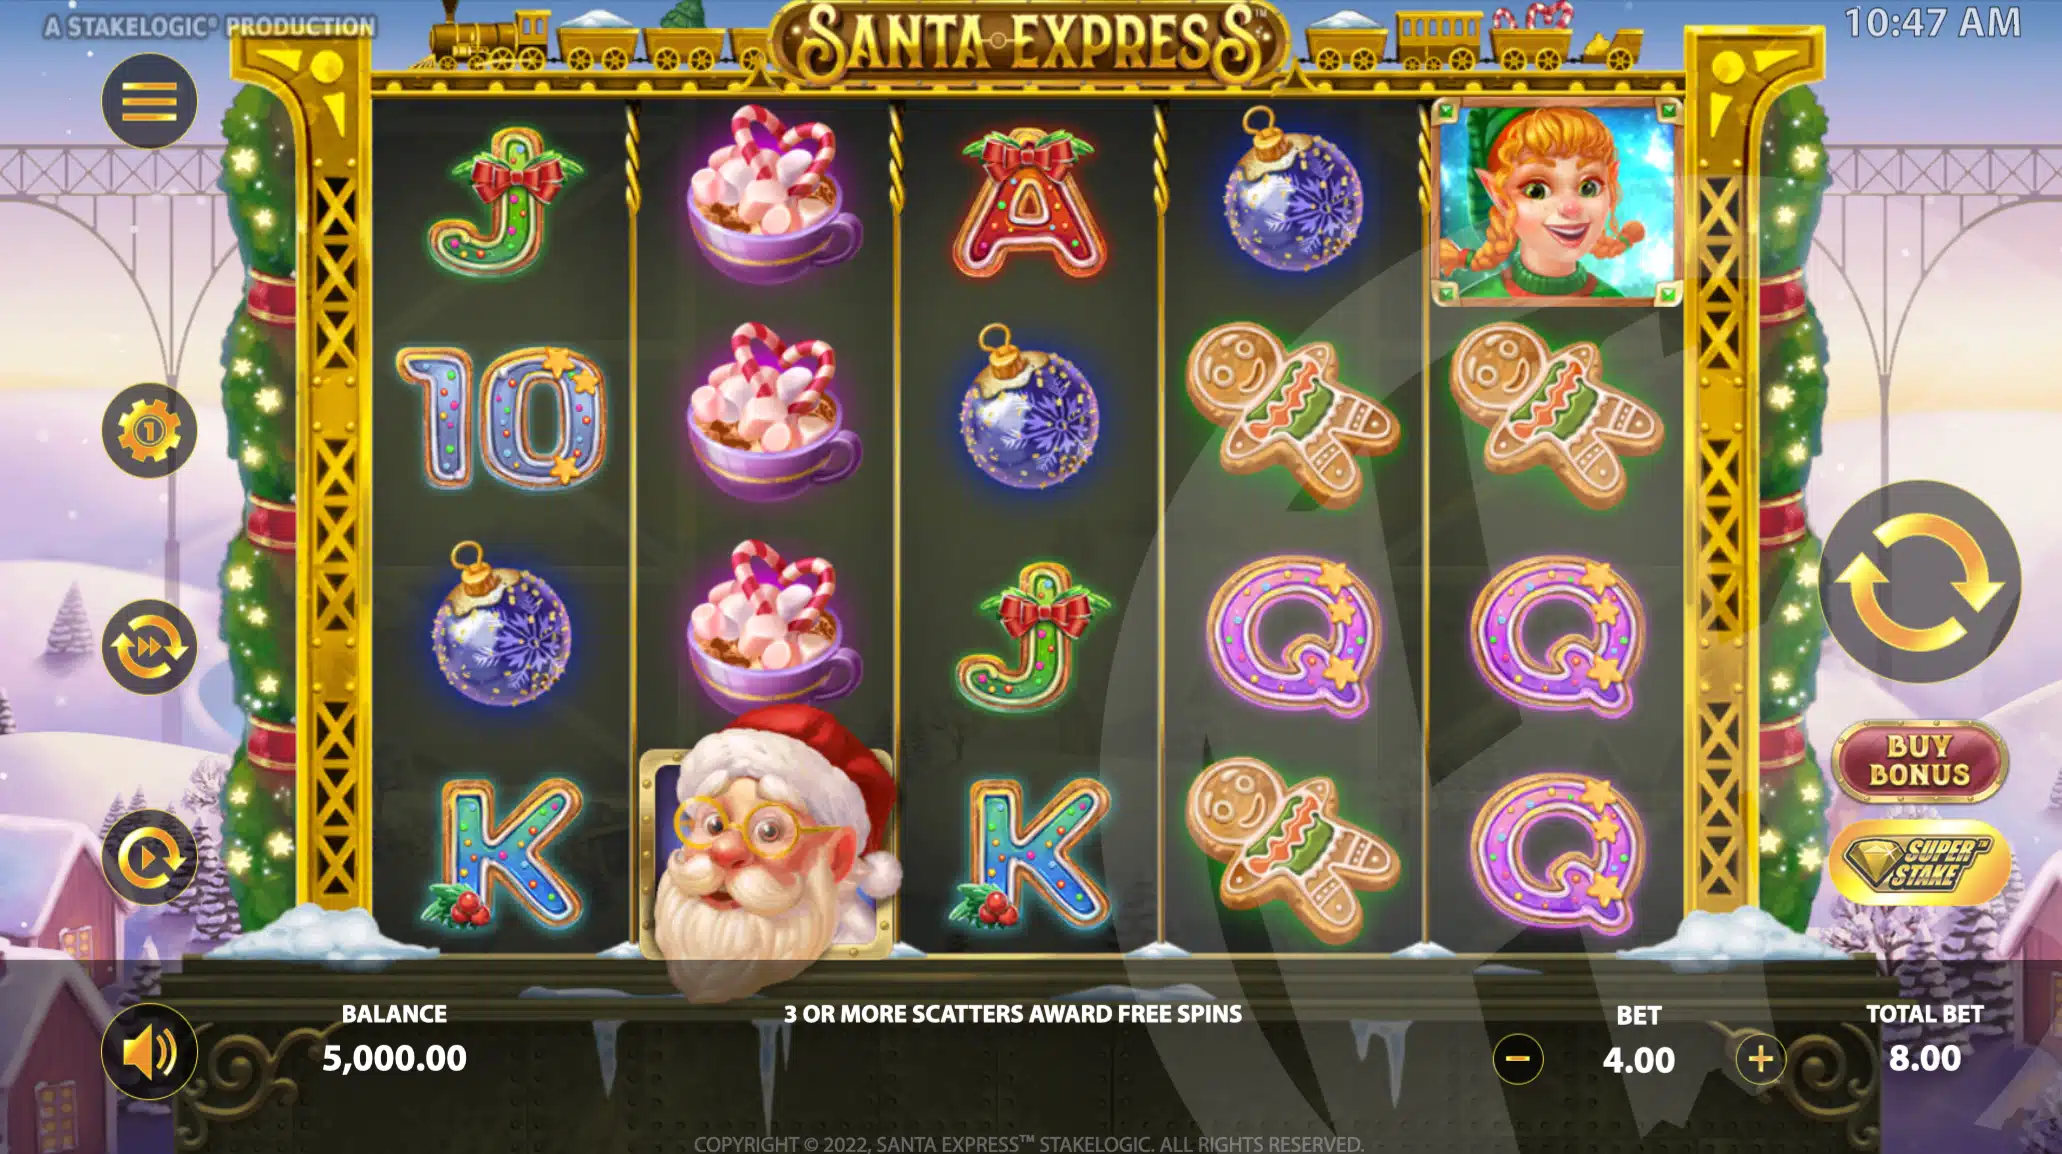 Santa Express Base Game